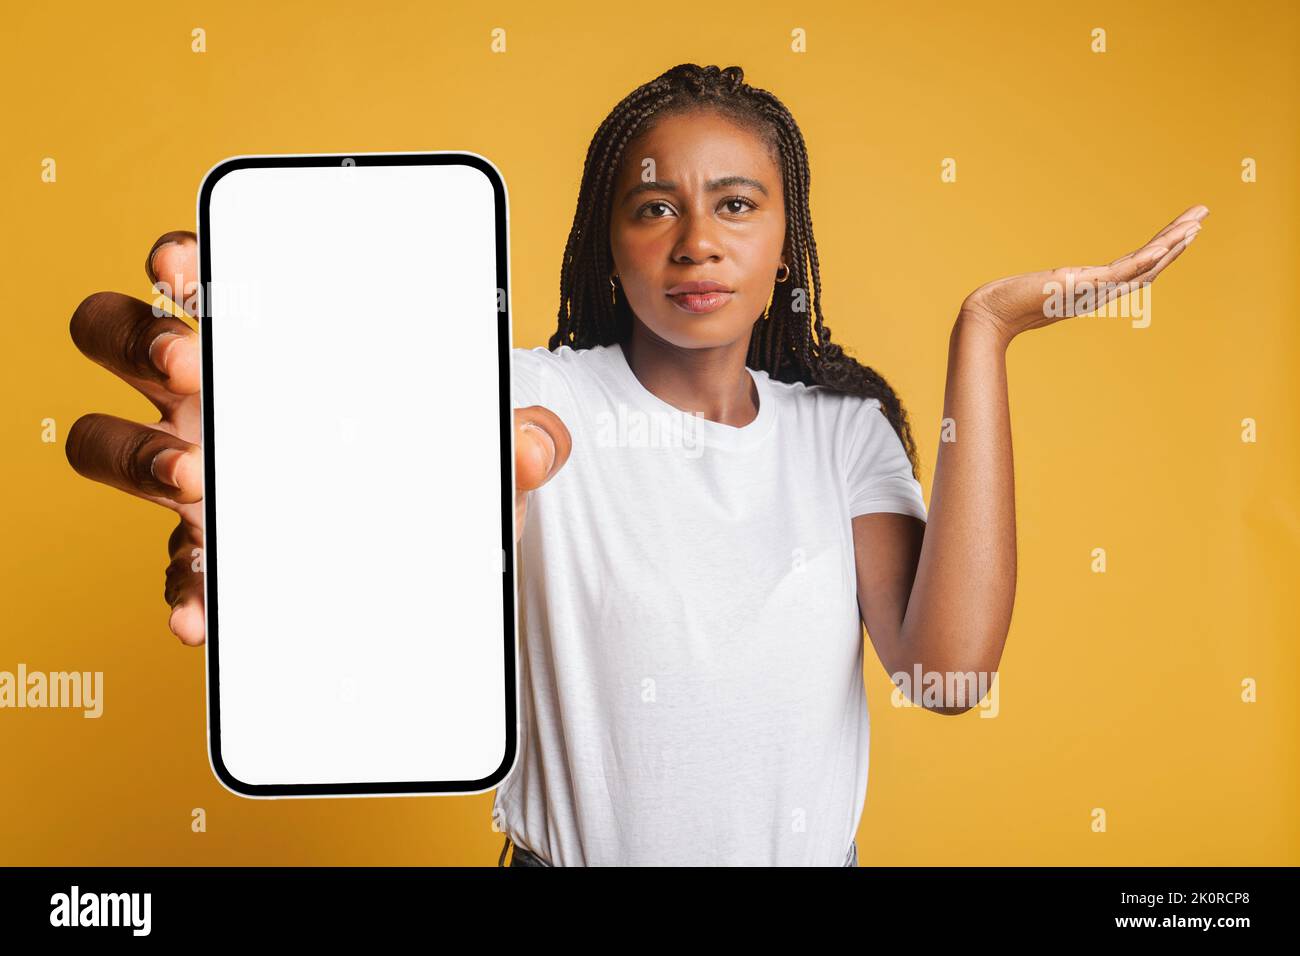 Una joven afro-americana decepcionada sosteniendo un smartphone y mirando la cámara, la señora recibió mala notificación o mensajes, se siente molesta, encogiéndose de hombros, aislada Foto de stock